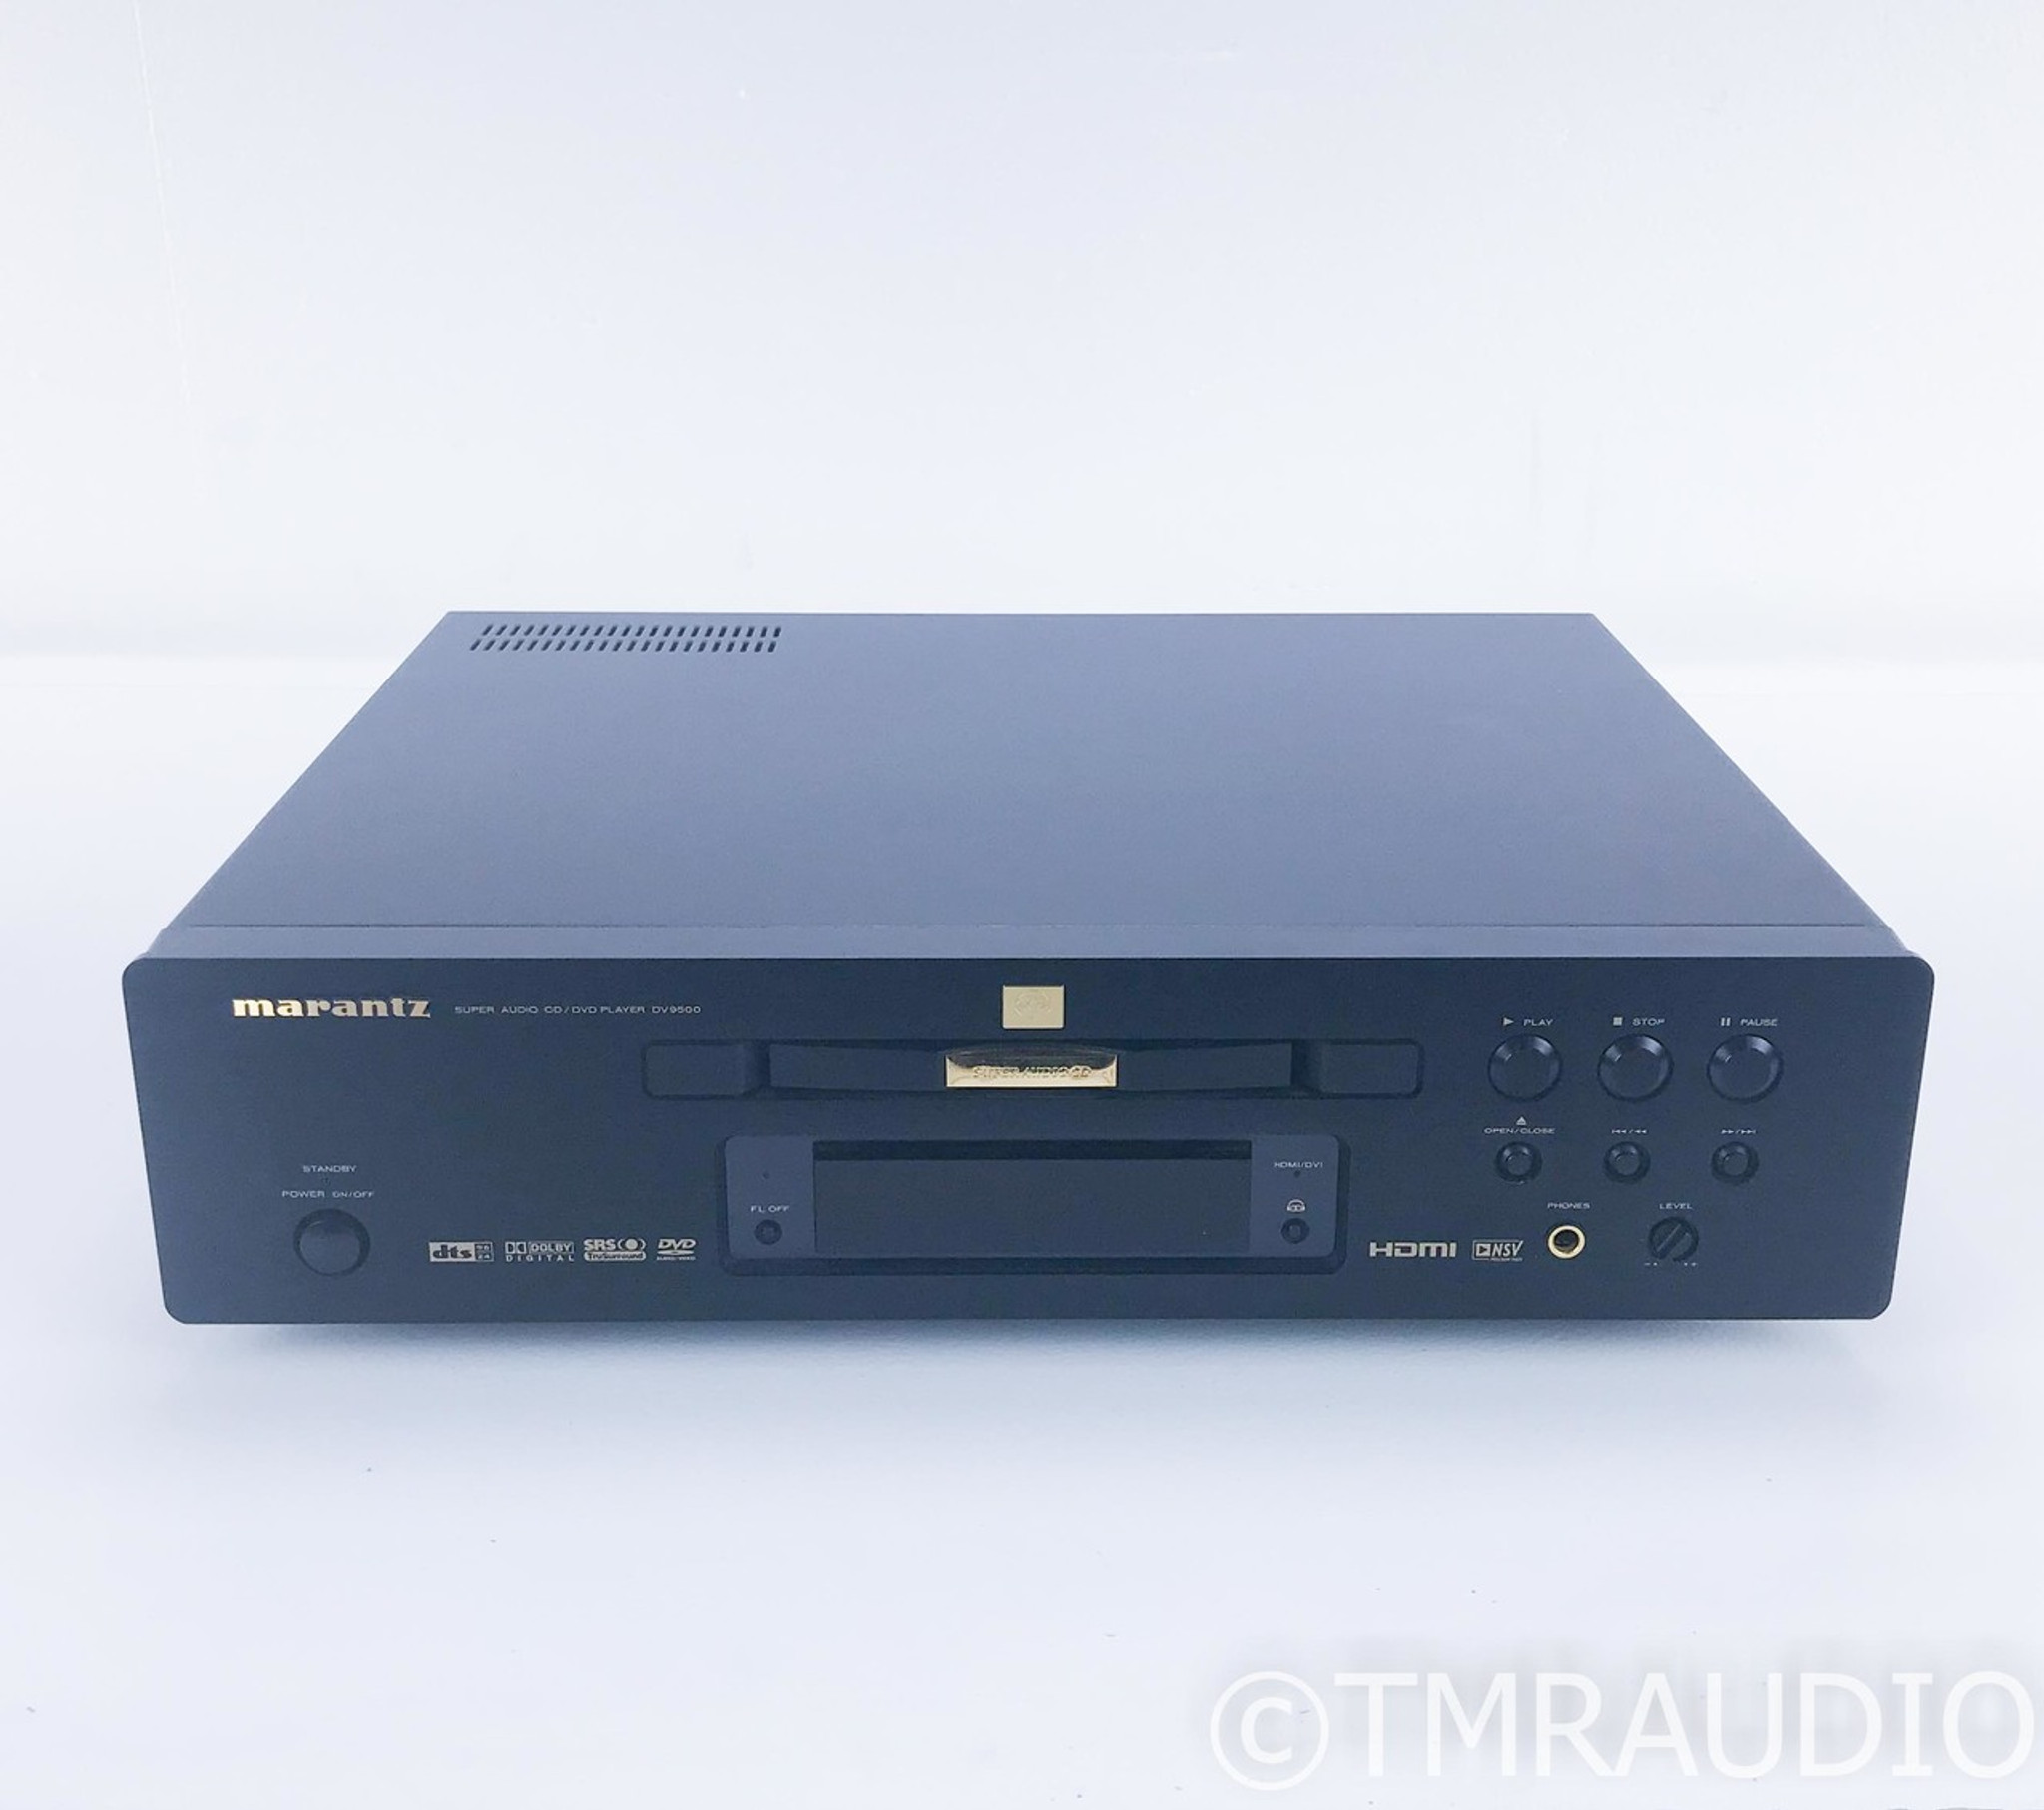 マランツ DV9500 CD DVD SACD プレイヤー - オーディオ機器